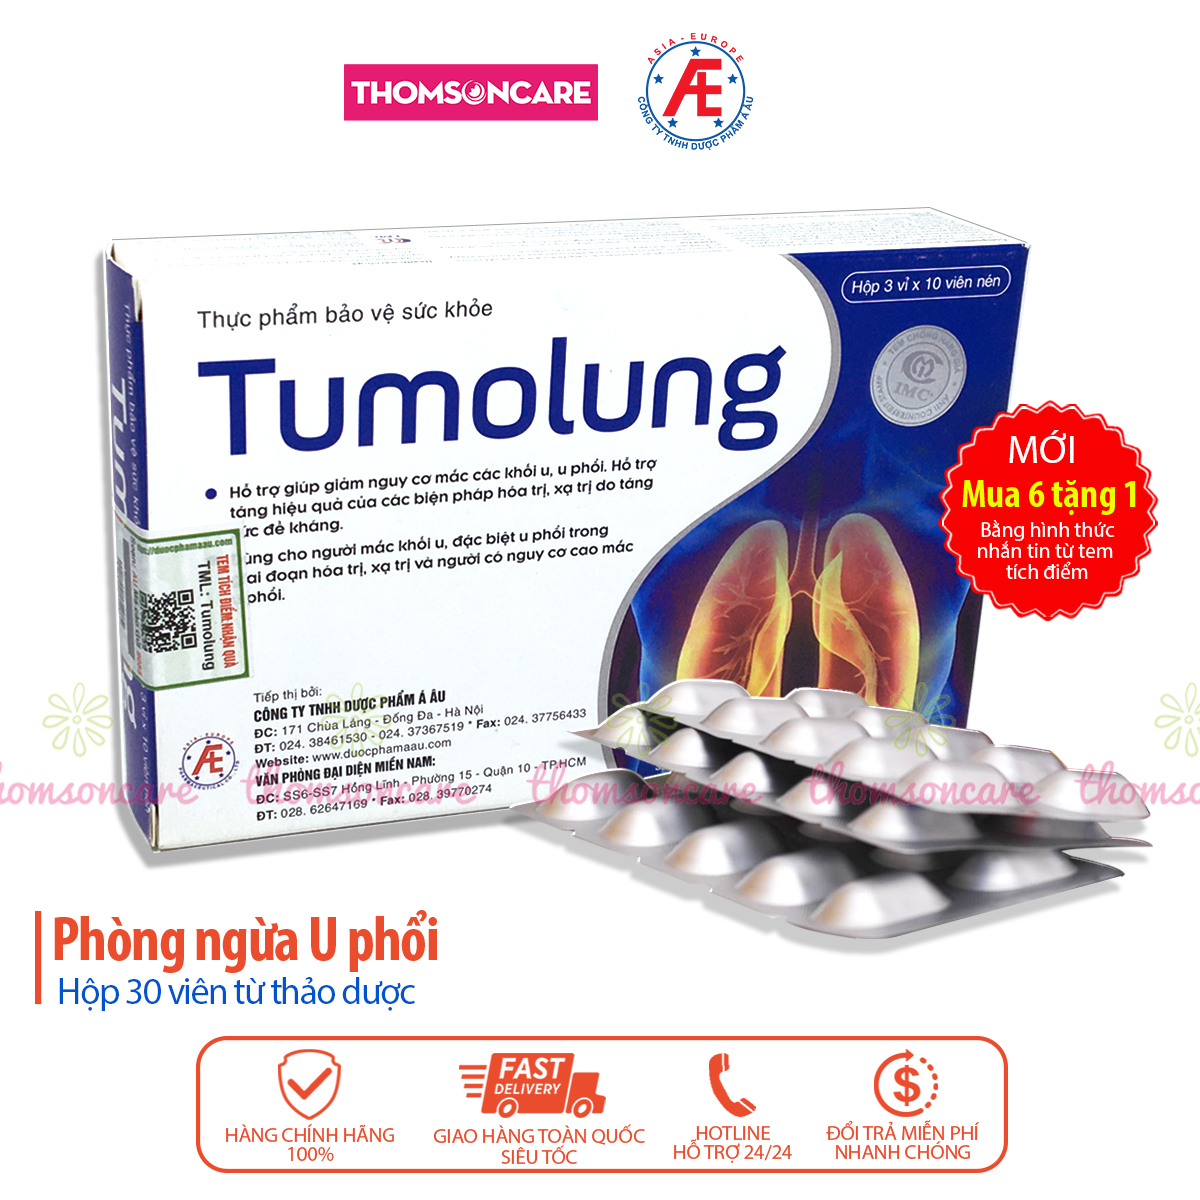 Tumolung - hỗ trợ cho người bị các khối u phổi từ thảo dược